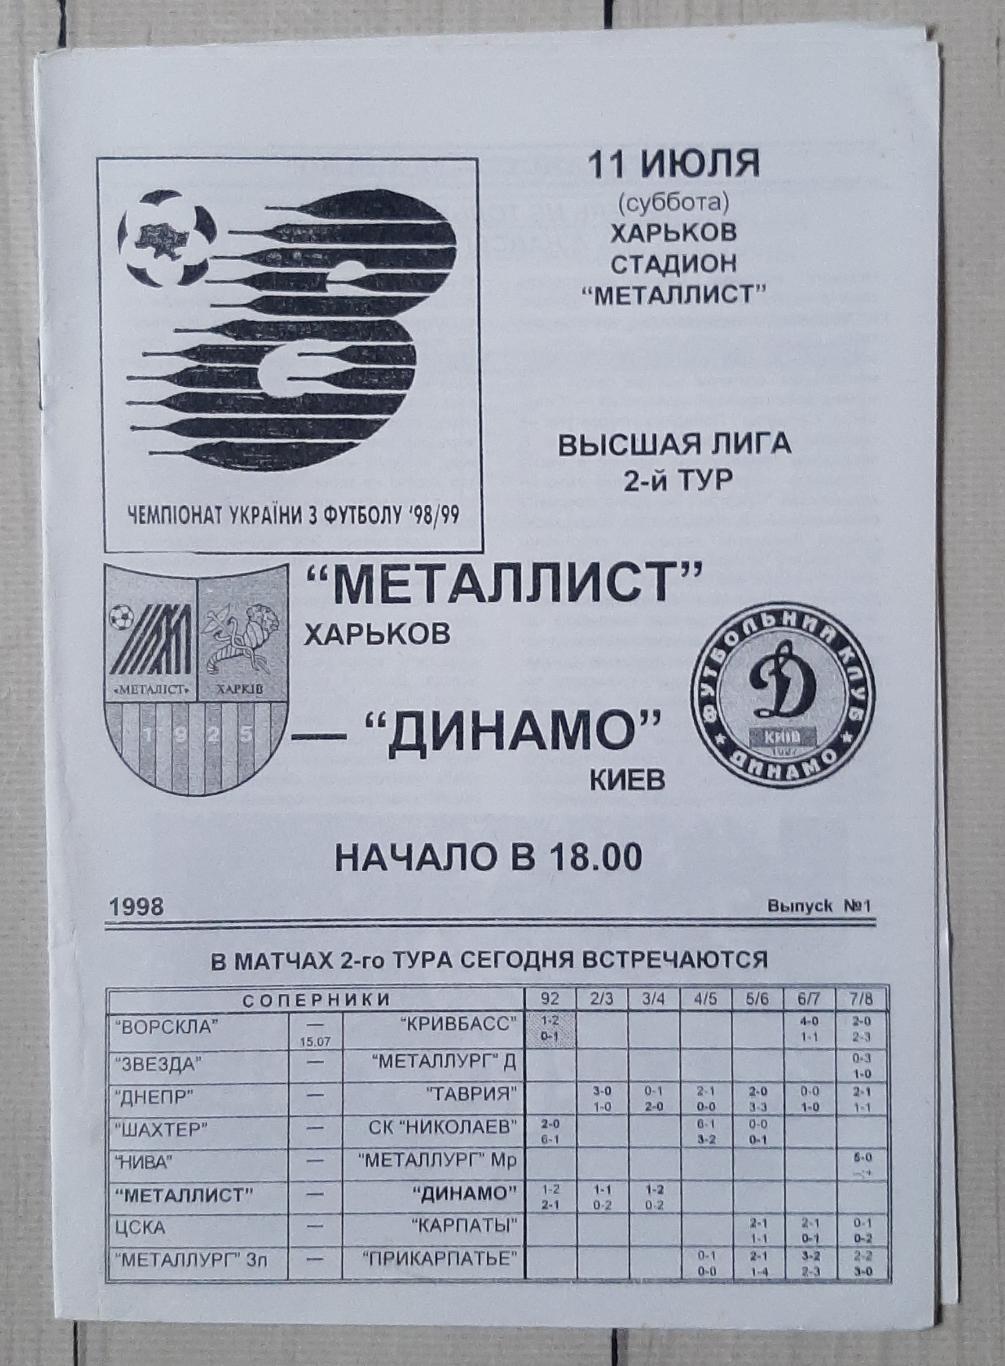 Металіст Харків - Динамо Київ 11.07.1998. Без обкладинки.